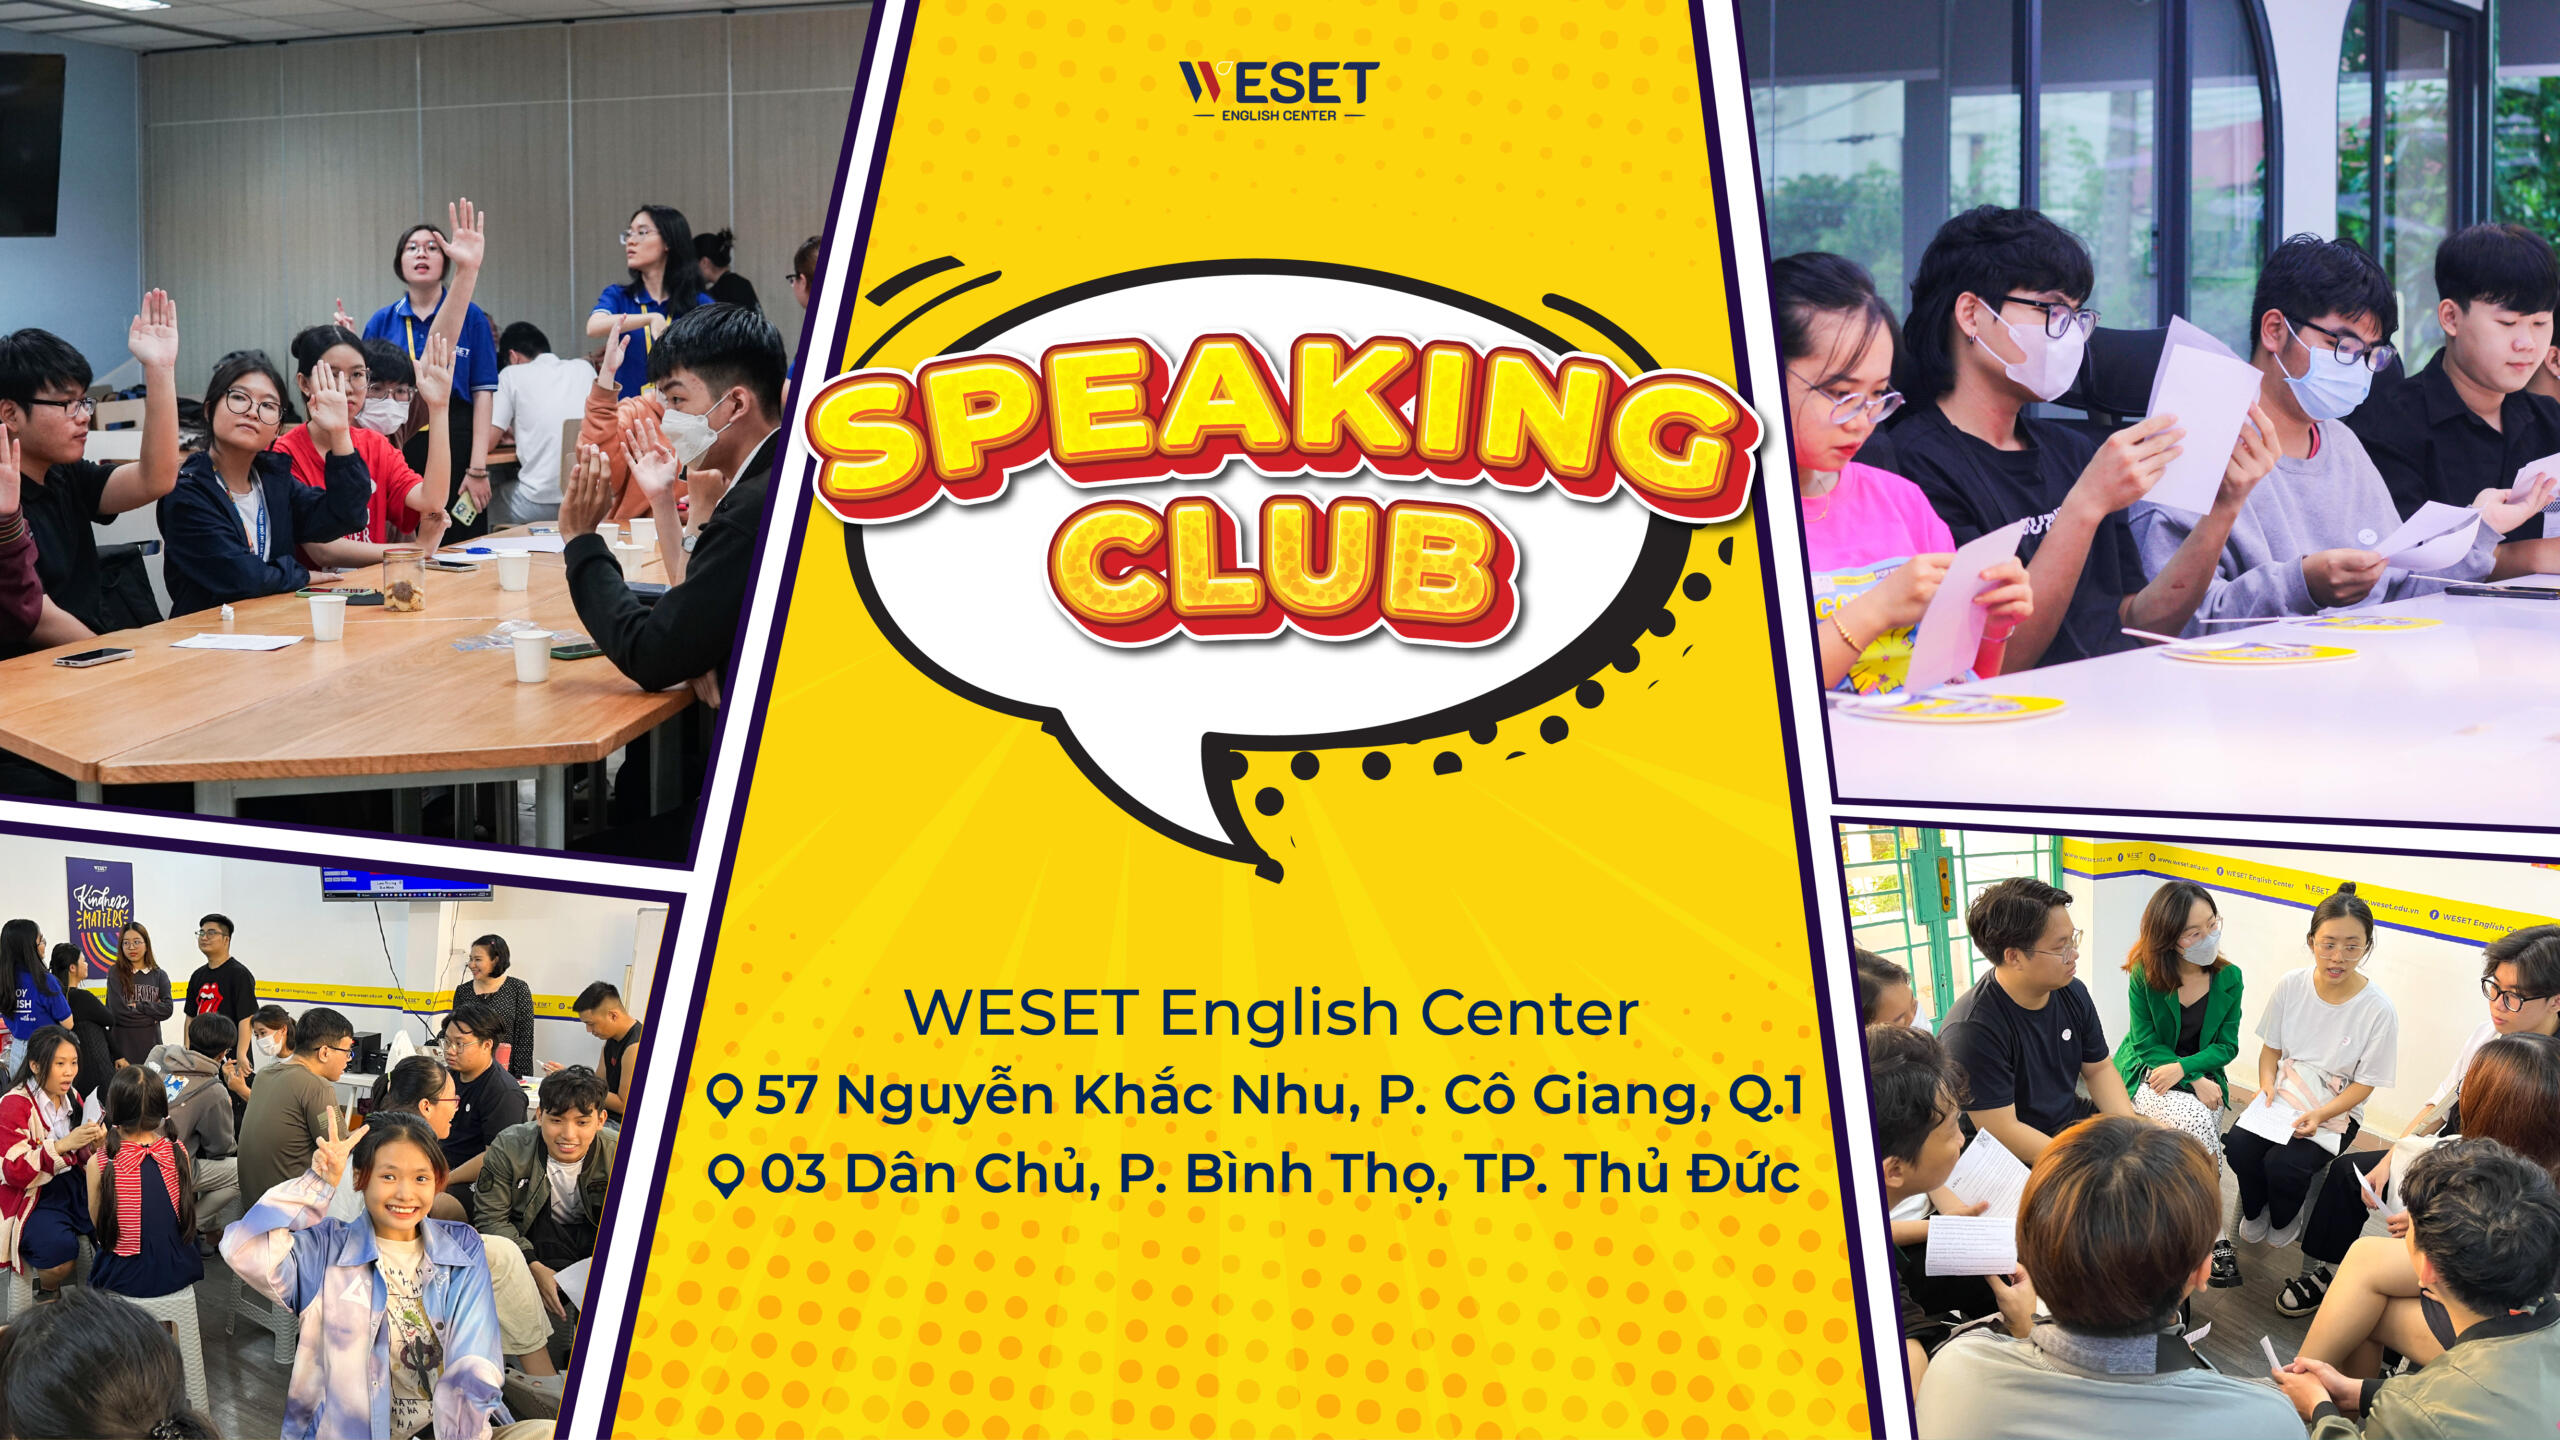 Đăng ký Speaking Club để nâng cao kỹ năng giao tiếp tiếng Anh và trải nghiệm nhiều hoạt động thú vị